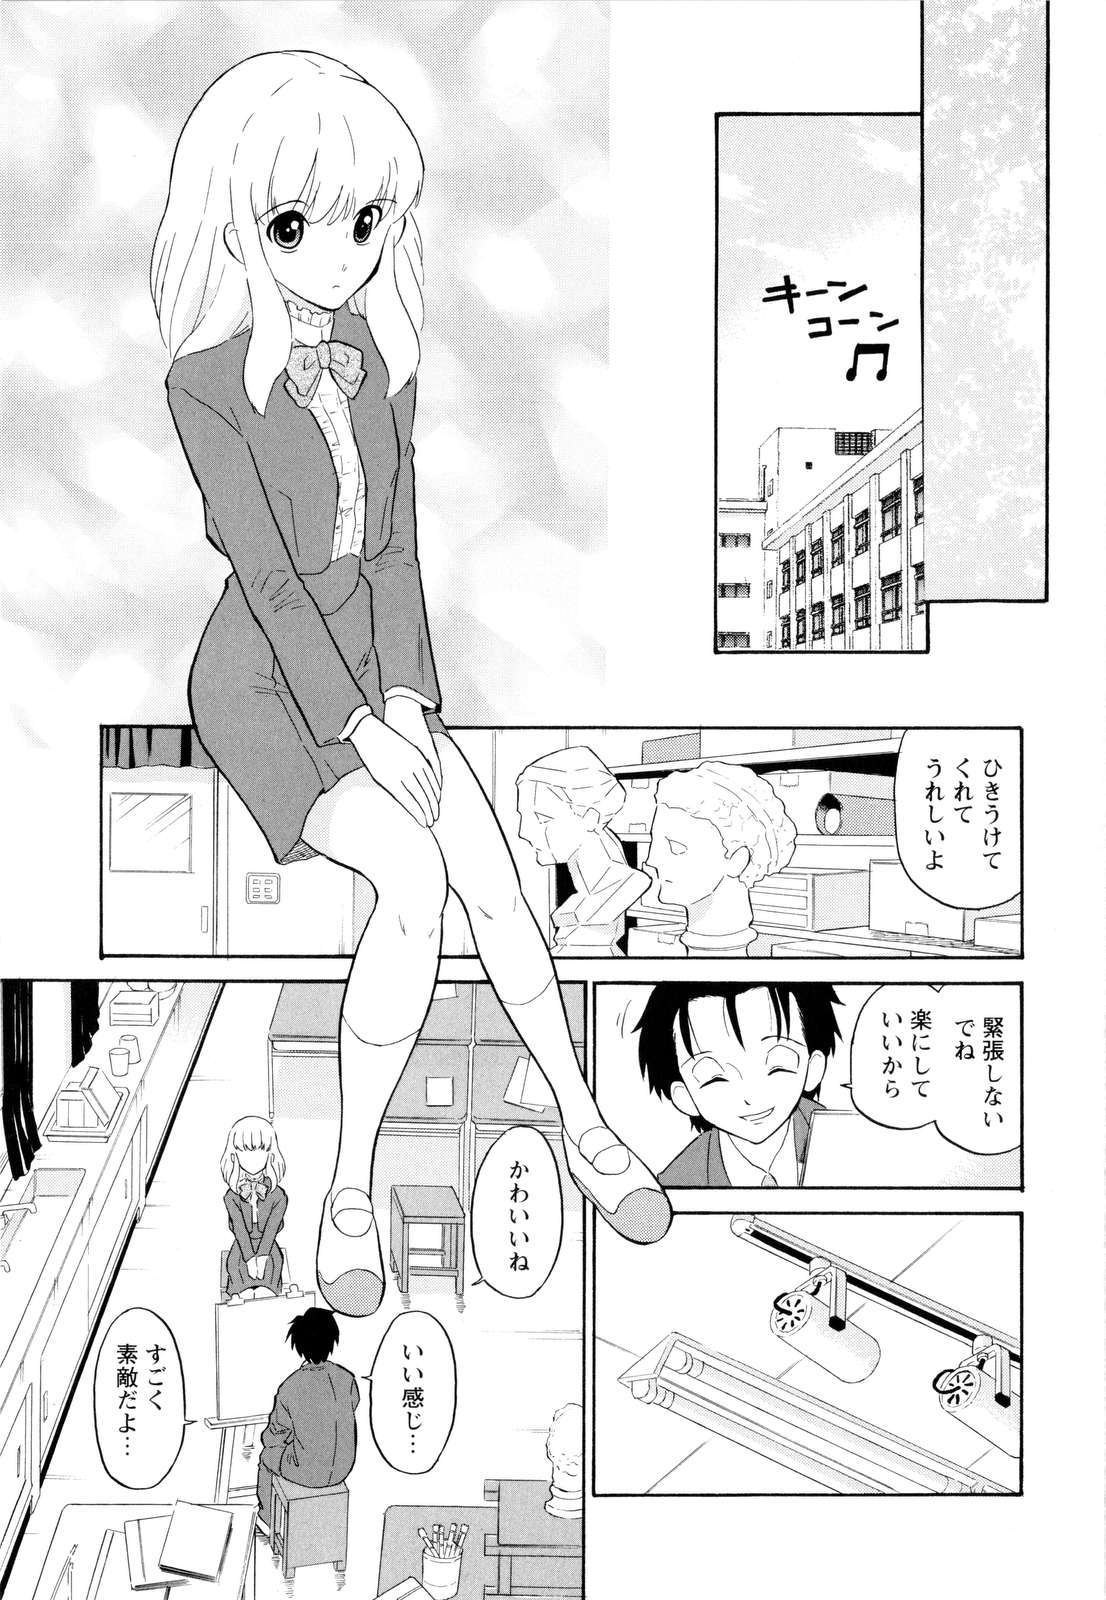 [Dozamura] Haruka 69 Vol.2 page 38 full